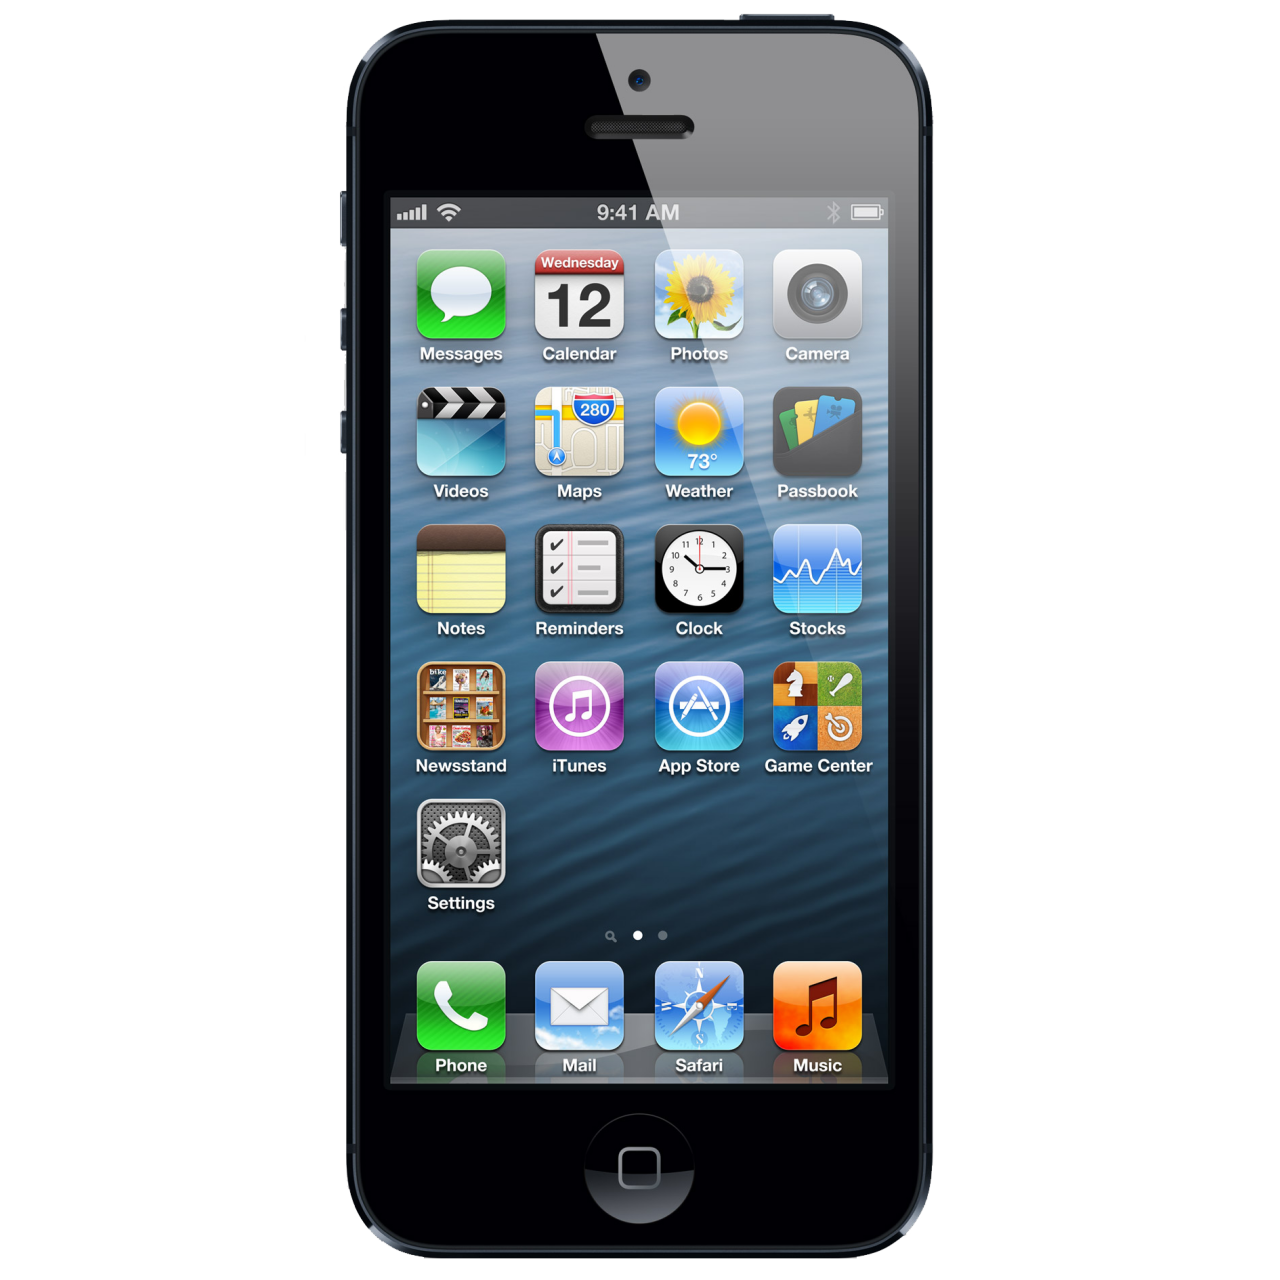  Apple iPhone 5 ile ilgili önemli sorularım var lütfen yardım edin ! :)